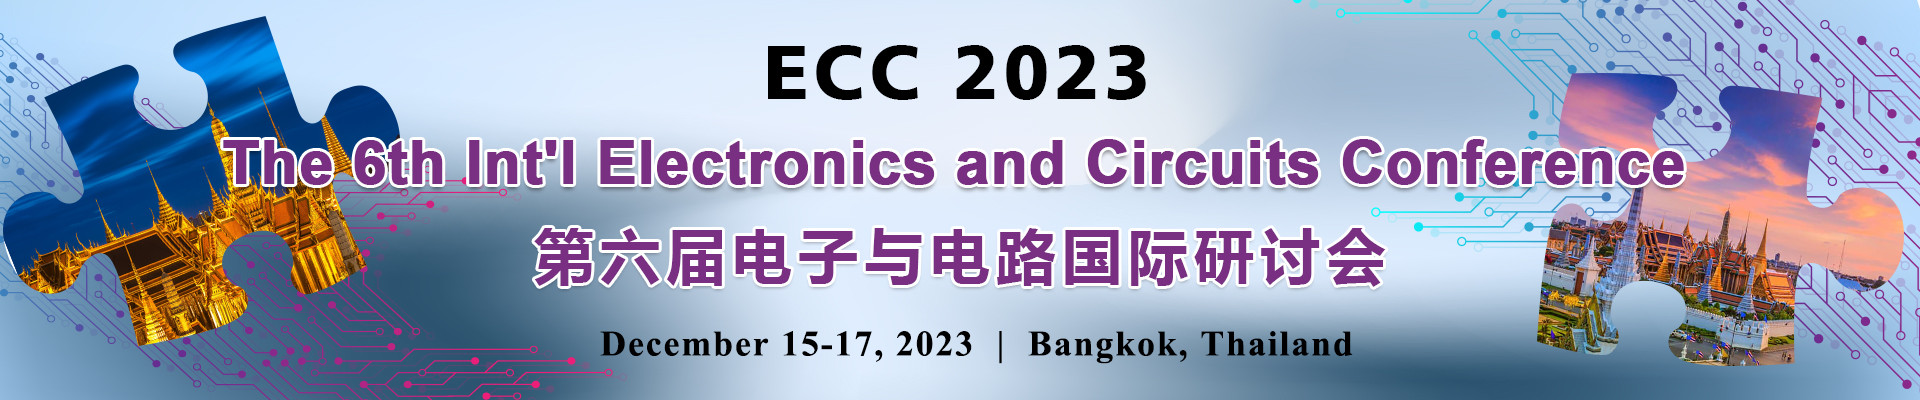 第六屆電子與電路國際研討會(ECC 2023)